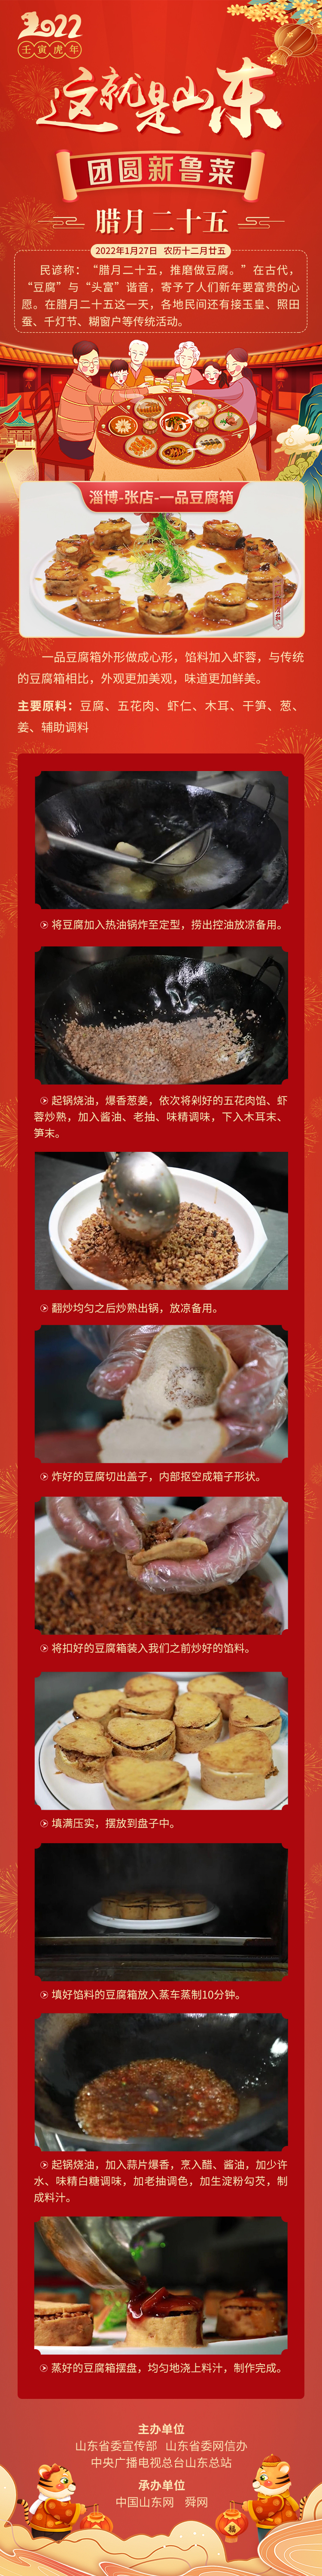 这就是山东·团圆新鲁菜——淄博-张店-一品豆腐箱